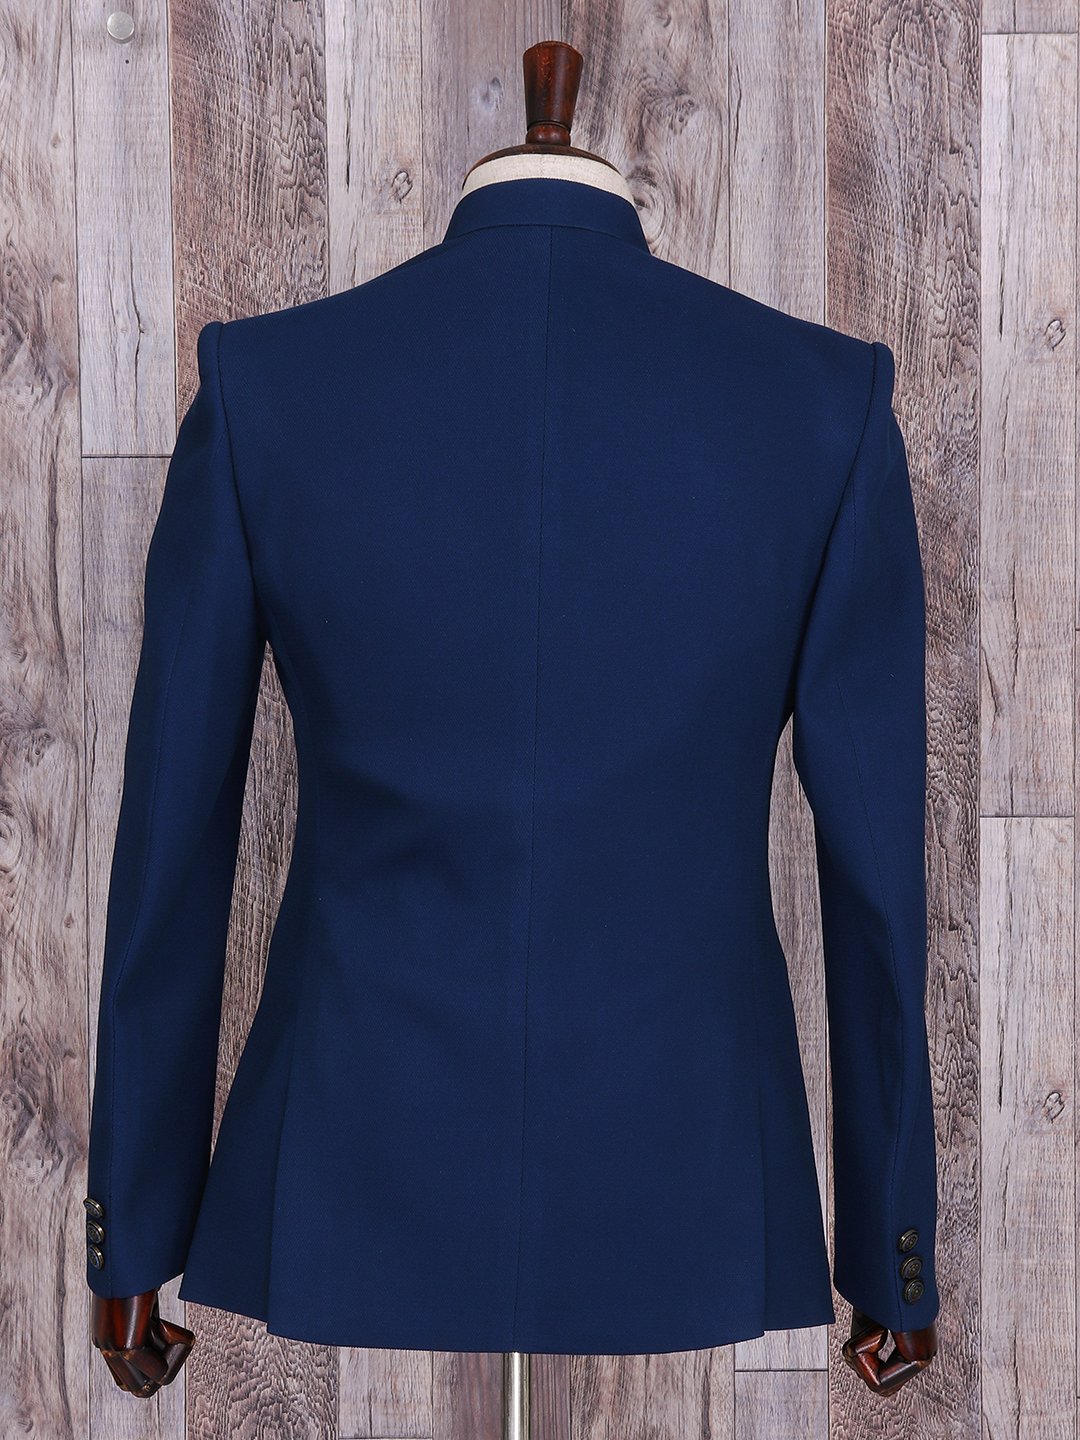 Simple Plain Blue Navy Prince Suit